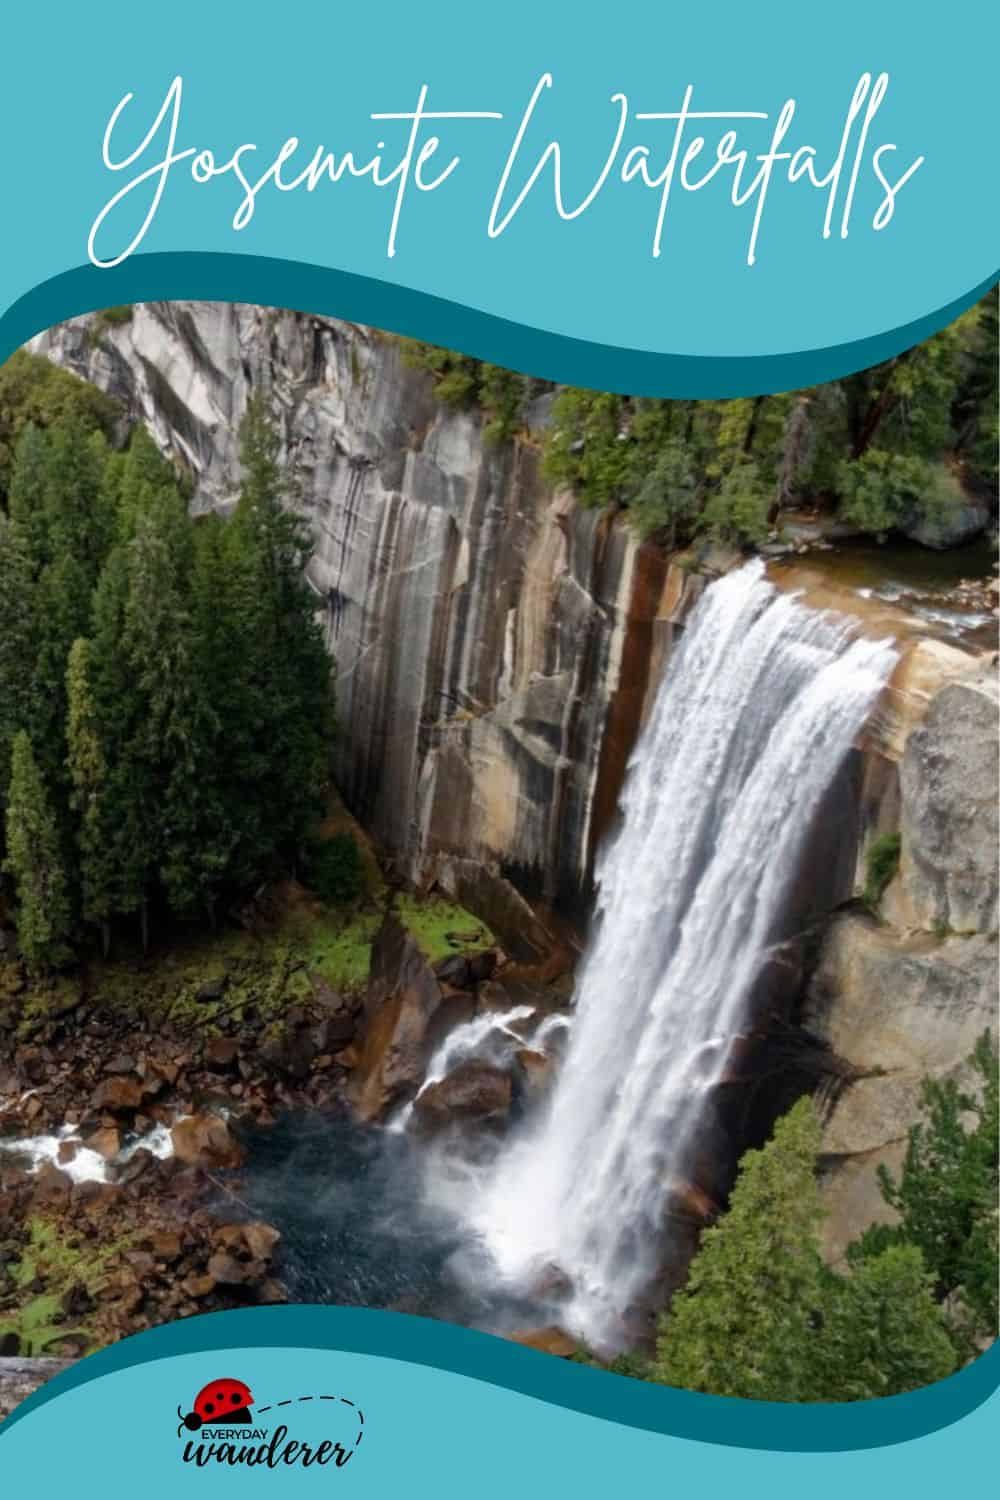 Yosemite Waterfalls - New Pin 3 - JPG